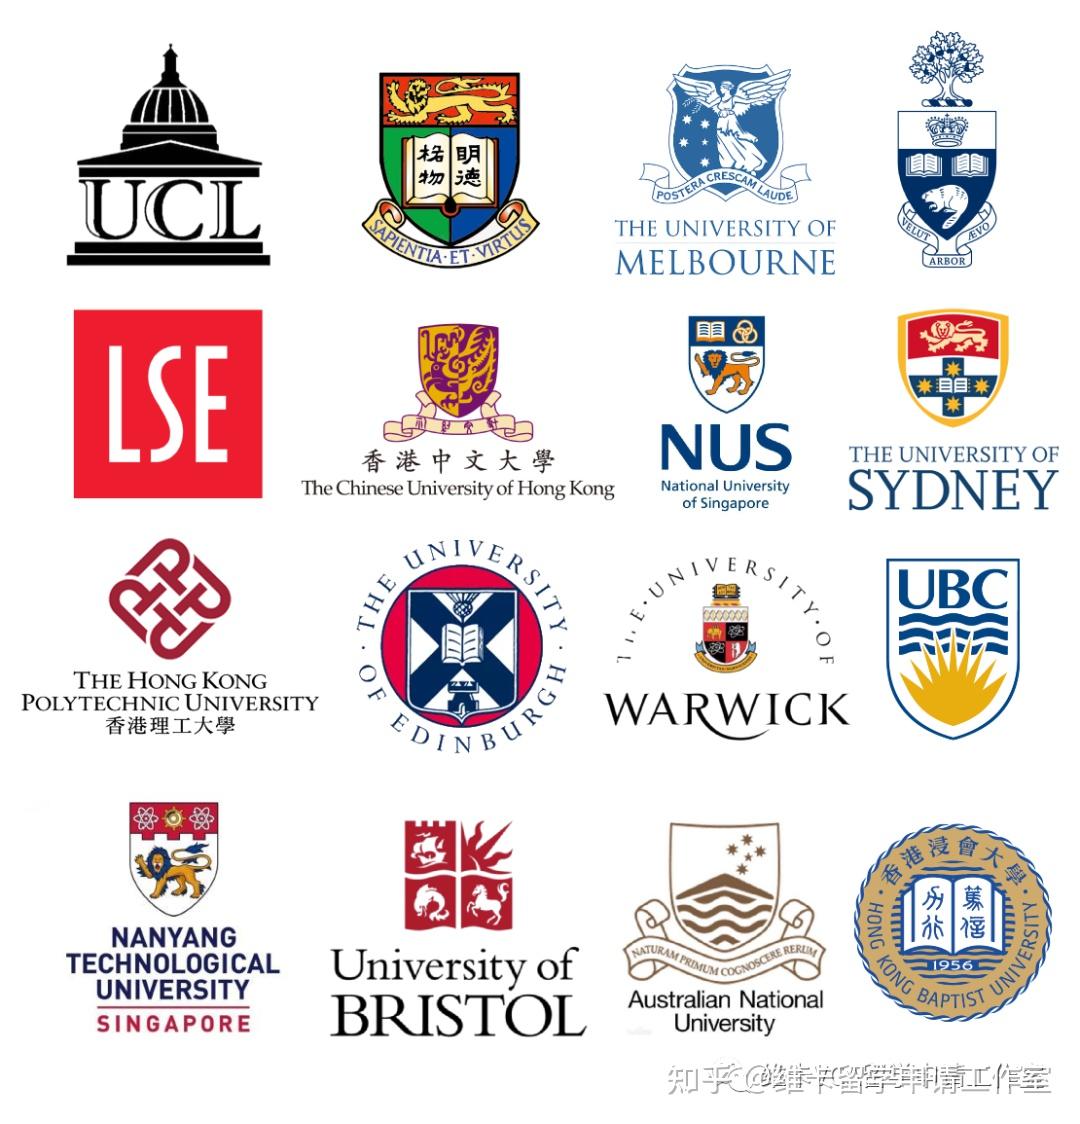 5个国家/地区,19所大学的offer英国:伦敦大学学院(ucl),伦敦政治经济